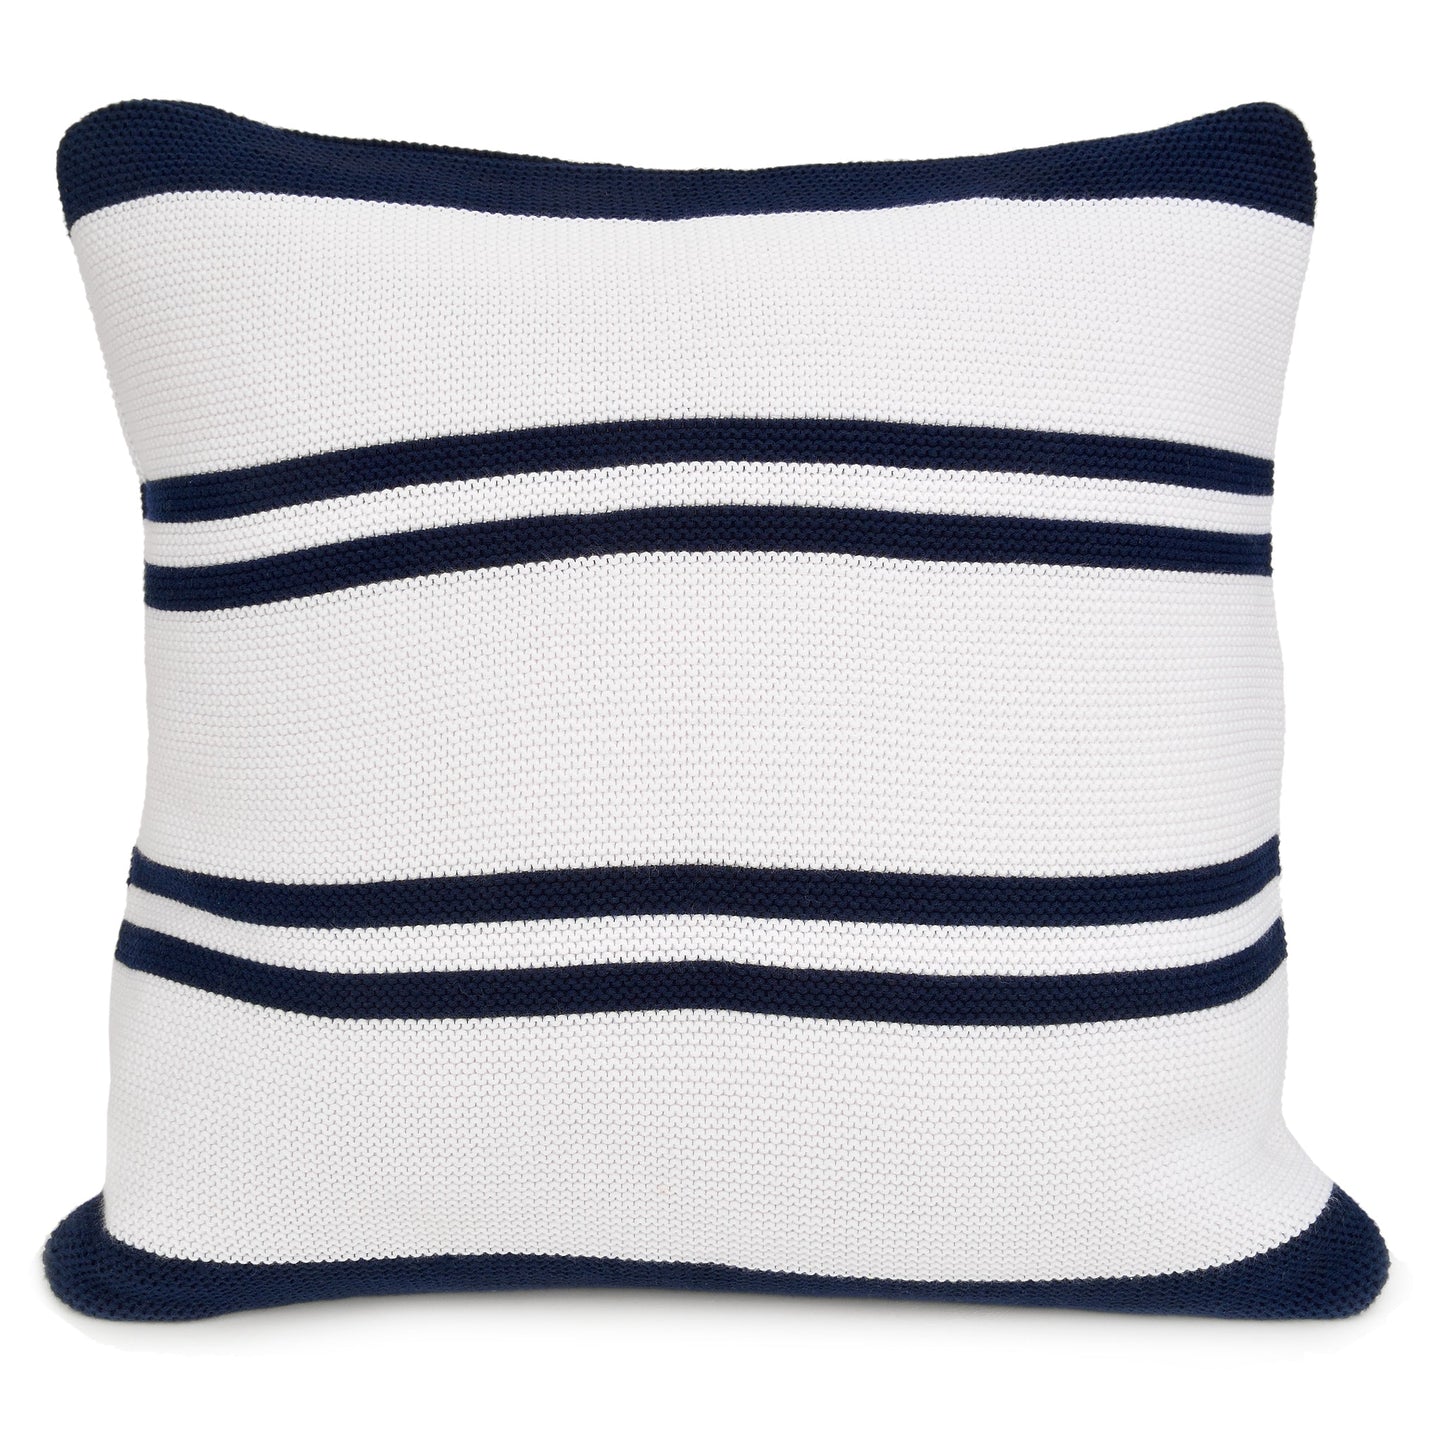 Hudson Pillow and Throw Set - Navy